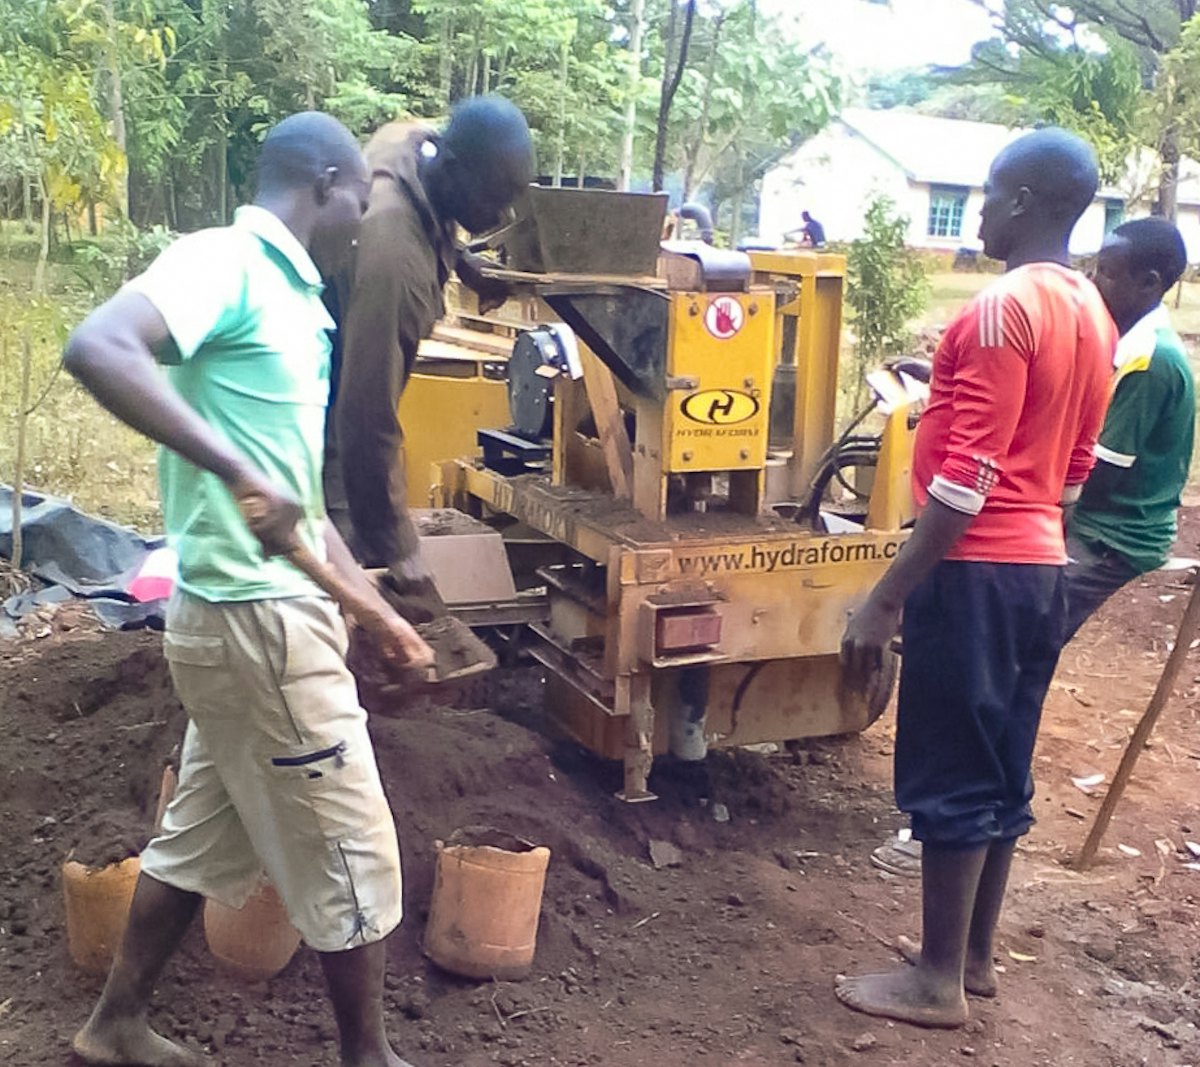 Le projet de construction d’un établissement d’enseignement à Namawanga a utilisé une machine hydraulique qui presse les briques constituées principalement de terre du site. La machine produit des briques emboitables qui sont simples à assembler sans avoir besoin de mortier.